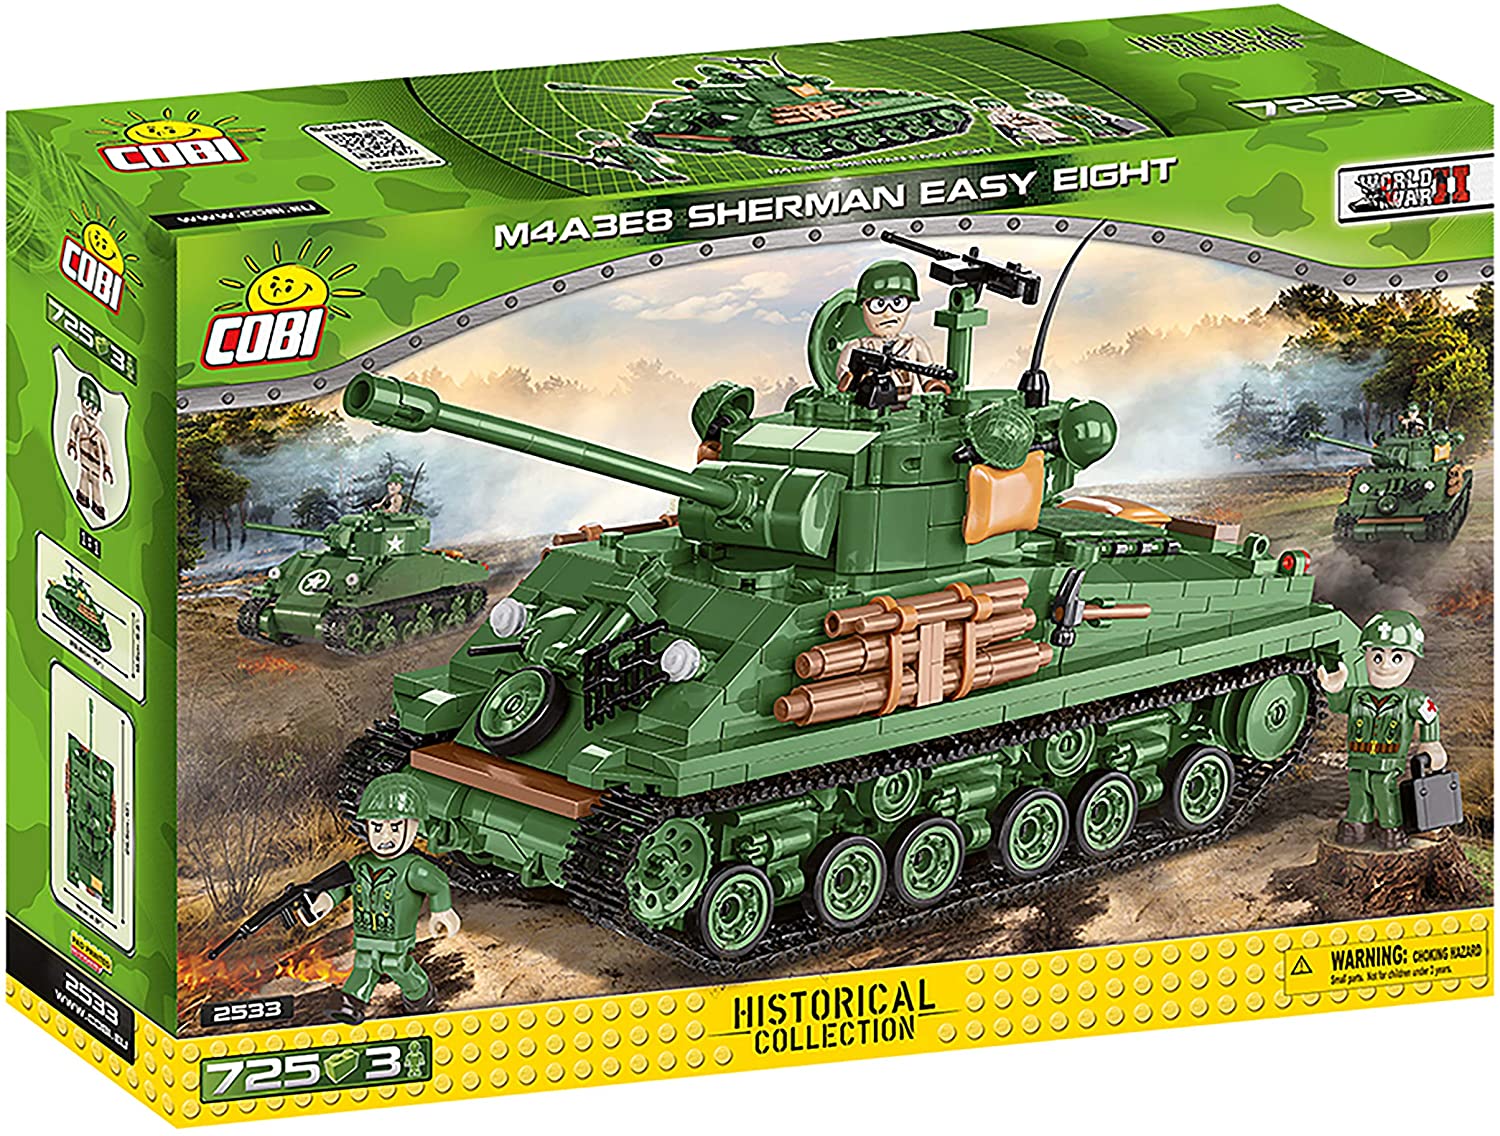 Cobi Cobi-2533 M4A3E8 Sherman Easy Eight Toys, Grün